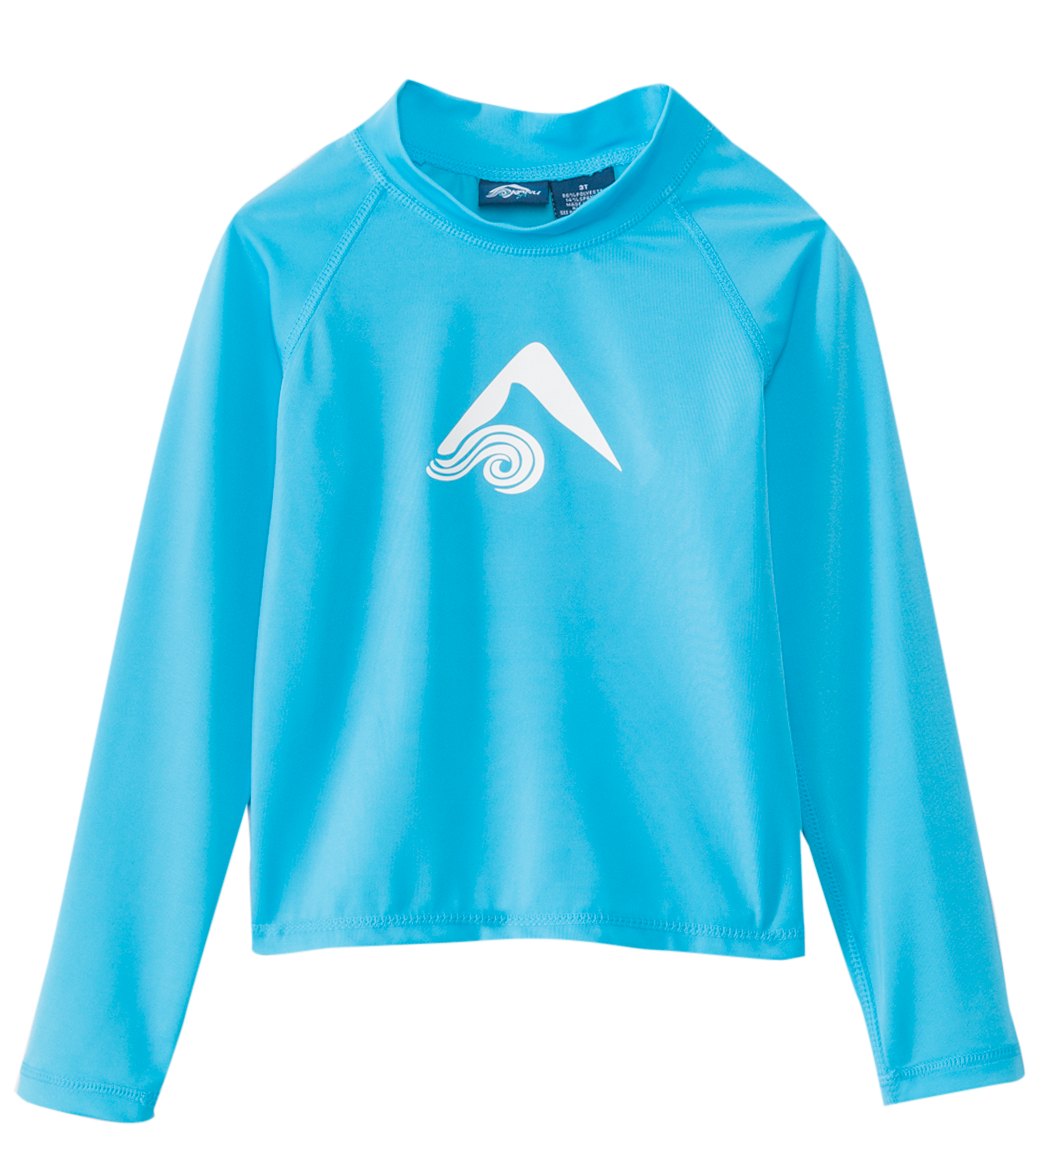 Kanu Surf Boys' Platinum Long Sleeve Shirt Rashguard 2T-5T - Aqua 2T - Swimoutlet.com